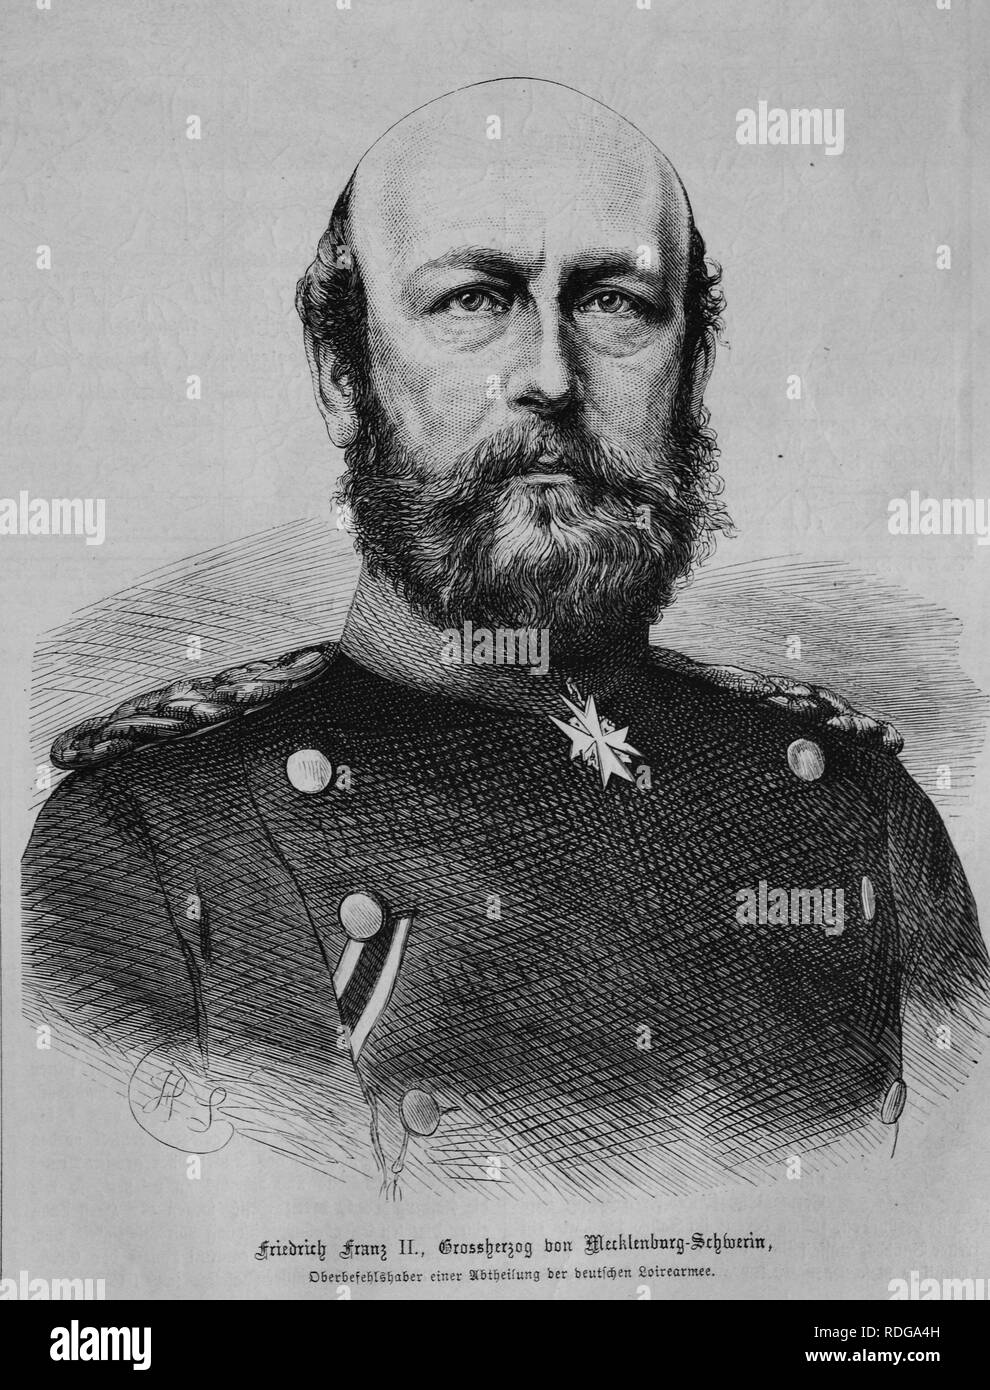 Friedrich Franz II, Gran Duque de Mecklenburg-Schwerin, Illustrierte Kriegschronik 1870 - 1871, 1870 - La crónica de la guerra contra ilustrado Foto de stock